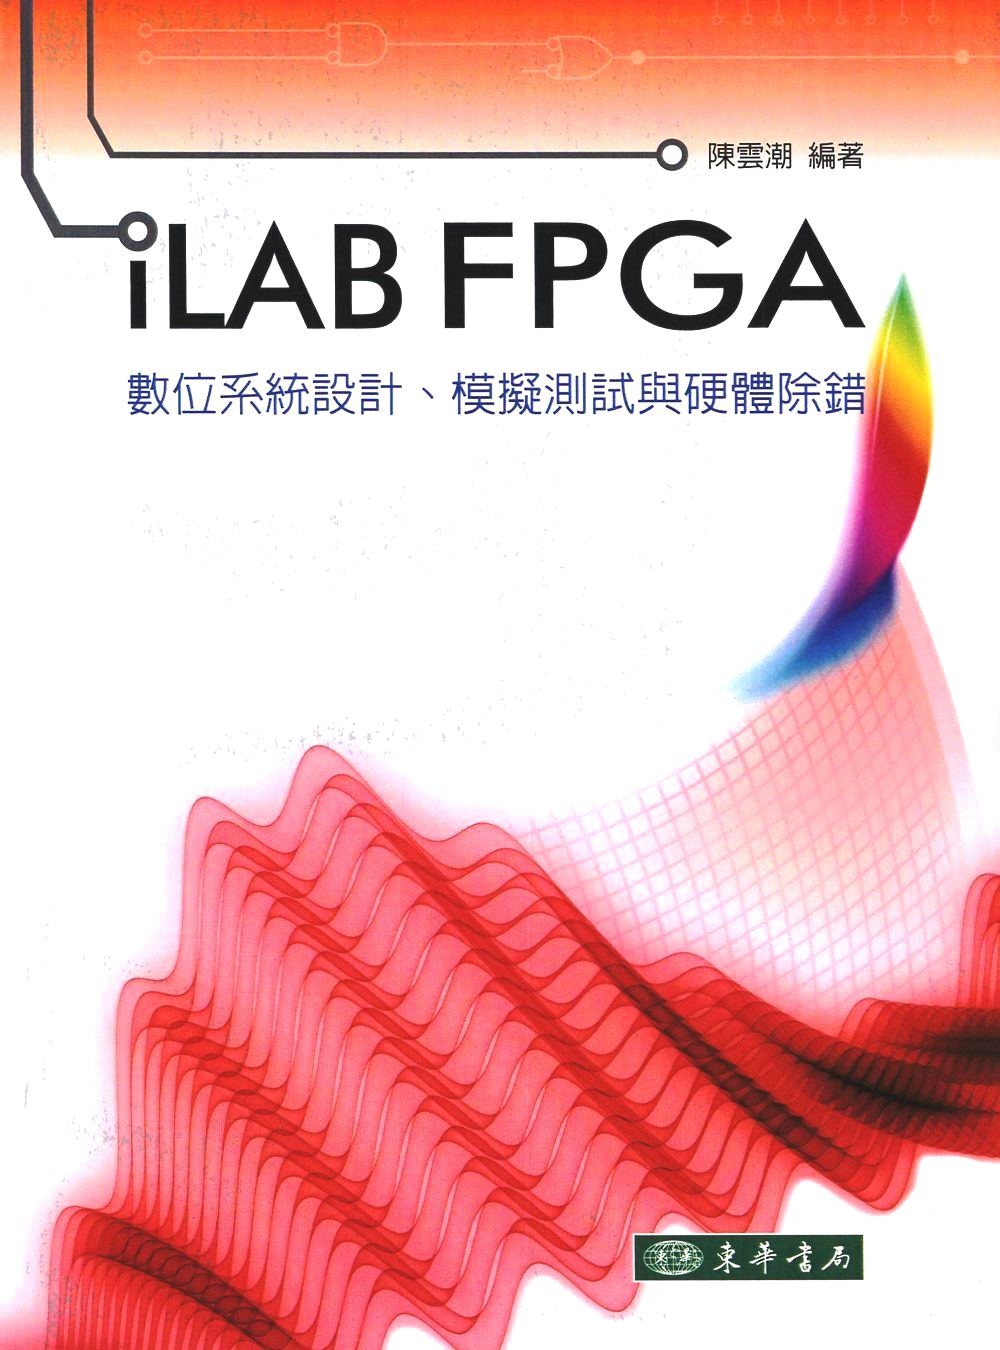 iLAB FPGA 數位系統設計、模擬 測試與硬體除錯